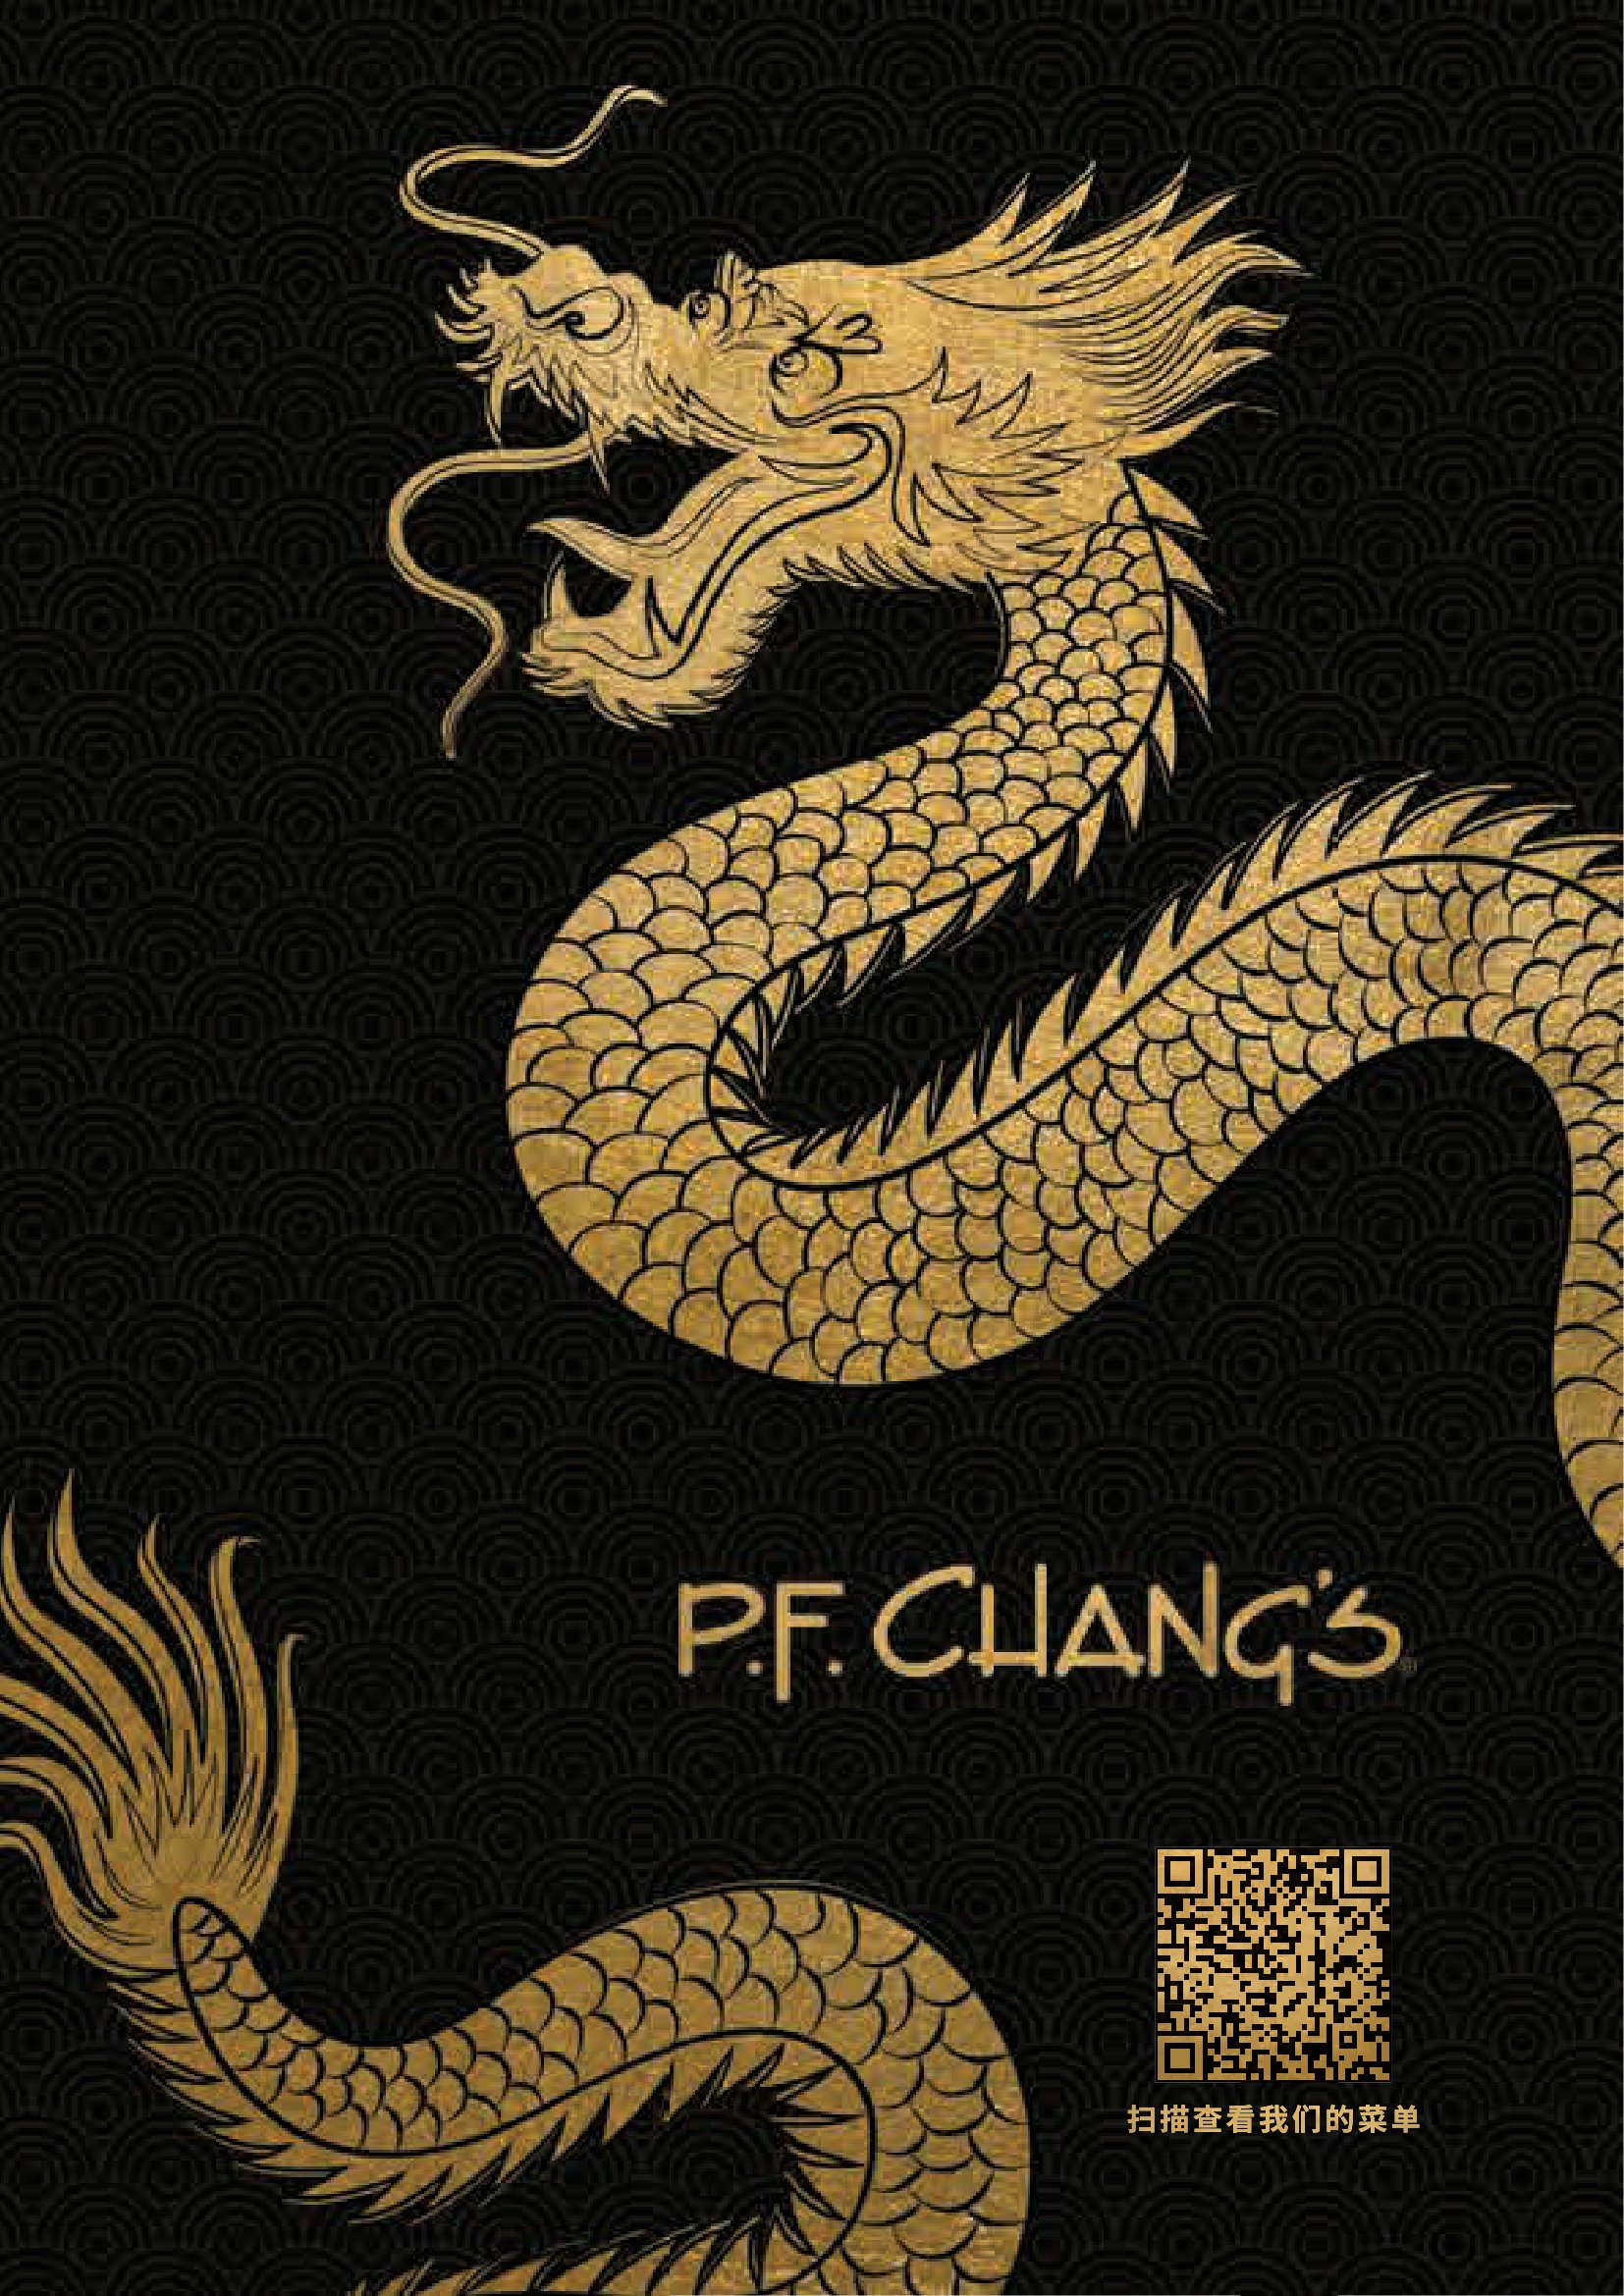 P.F. Chang's Menu